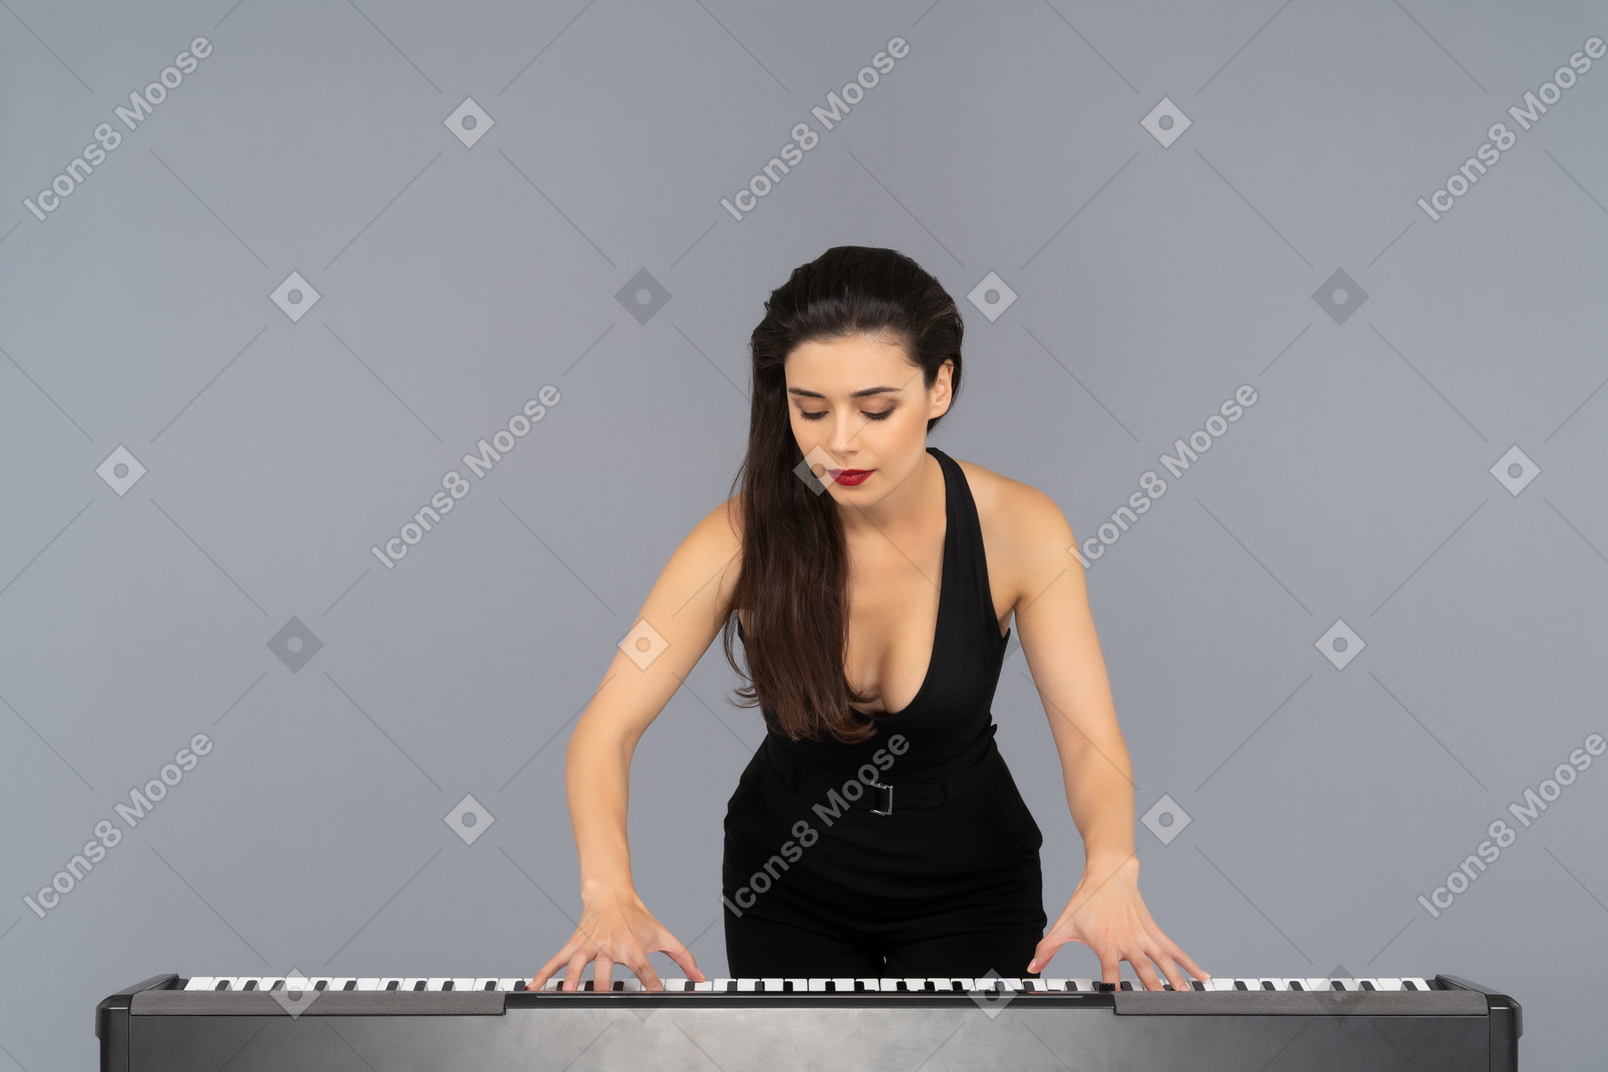 Jovem pianista do sexo feminino sendo focada nela tocando